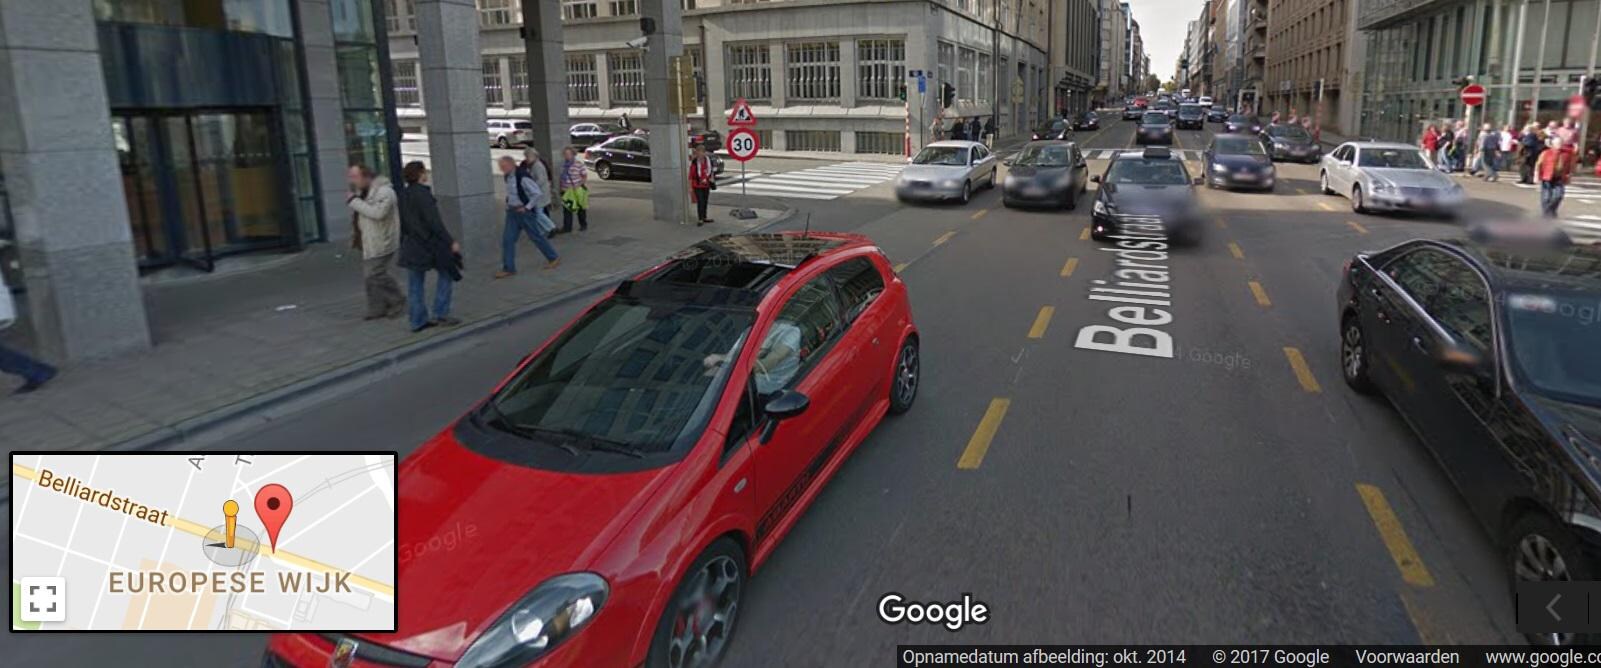 Motorrijder levensgevaarlijk gewond bij ongeval in Brusselse Belliardstraat